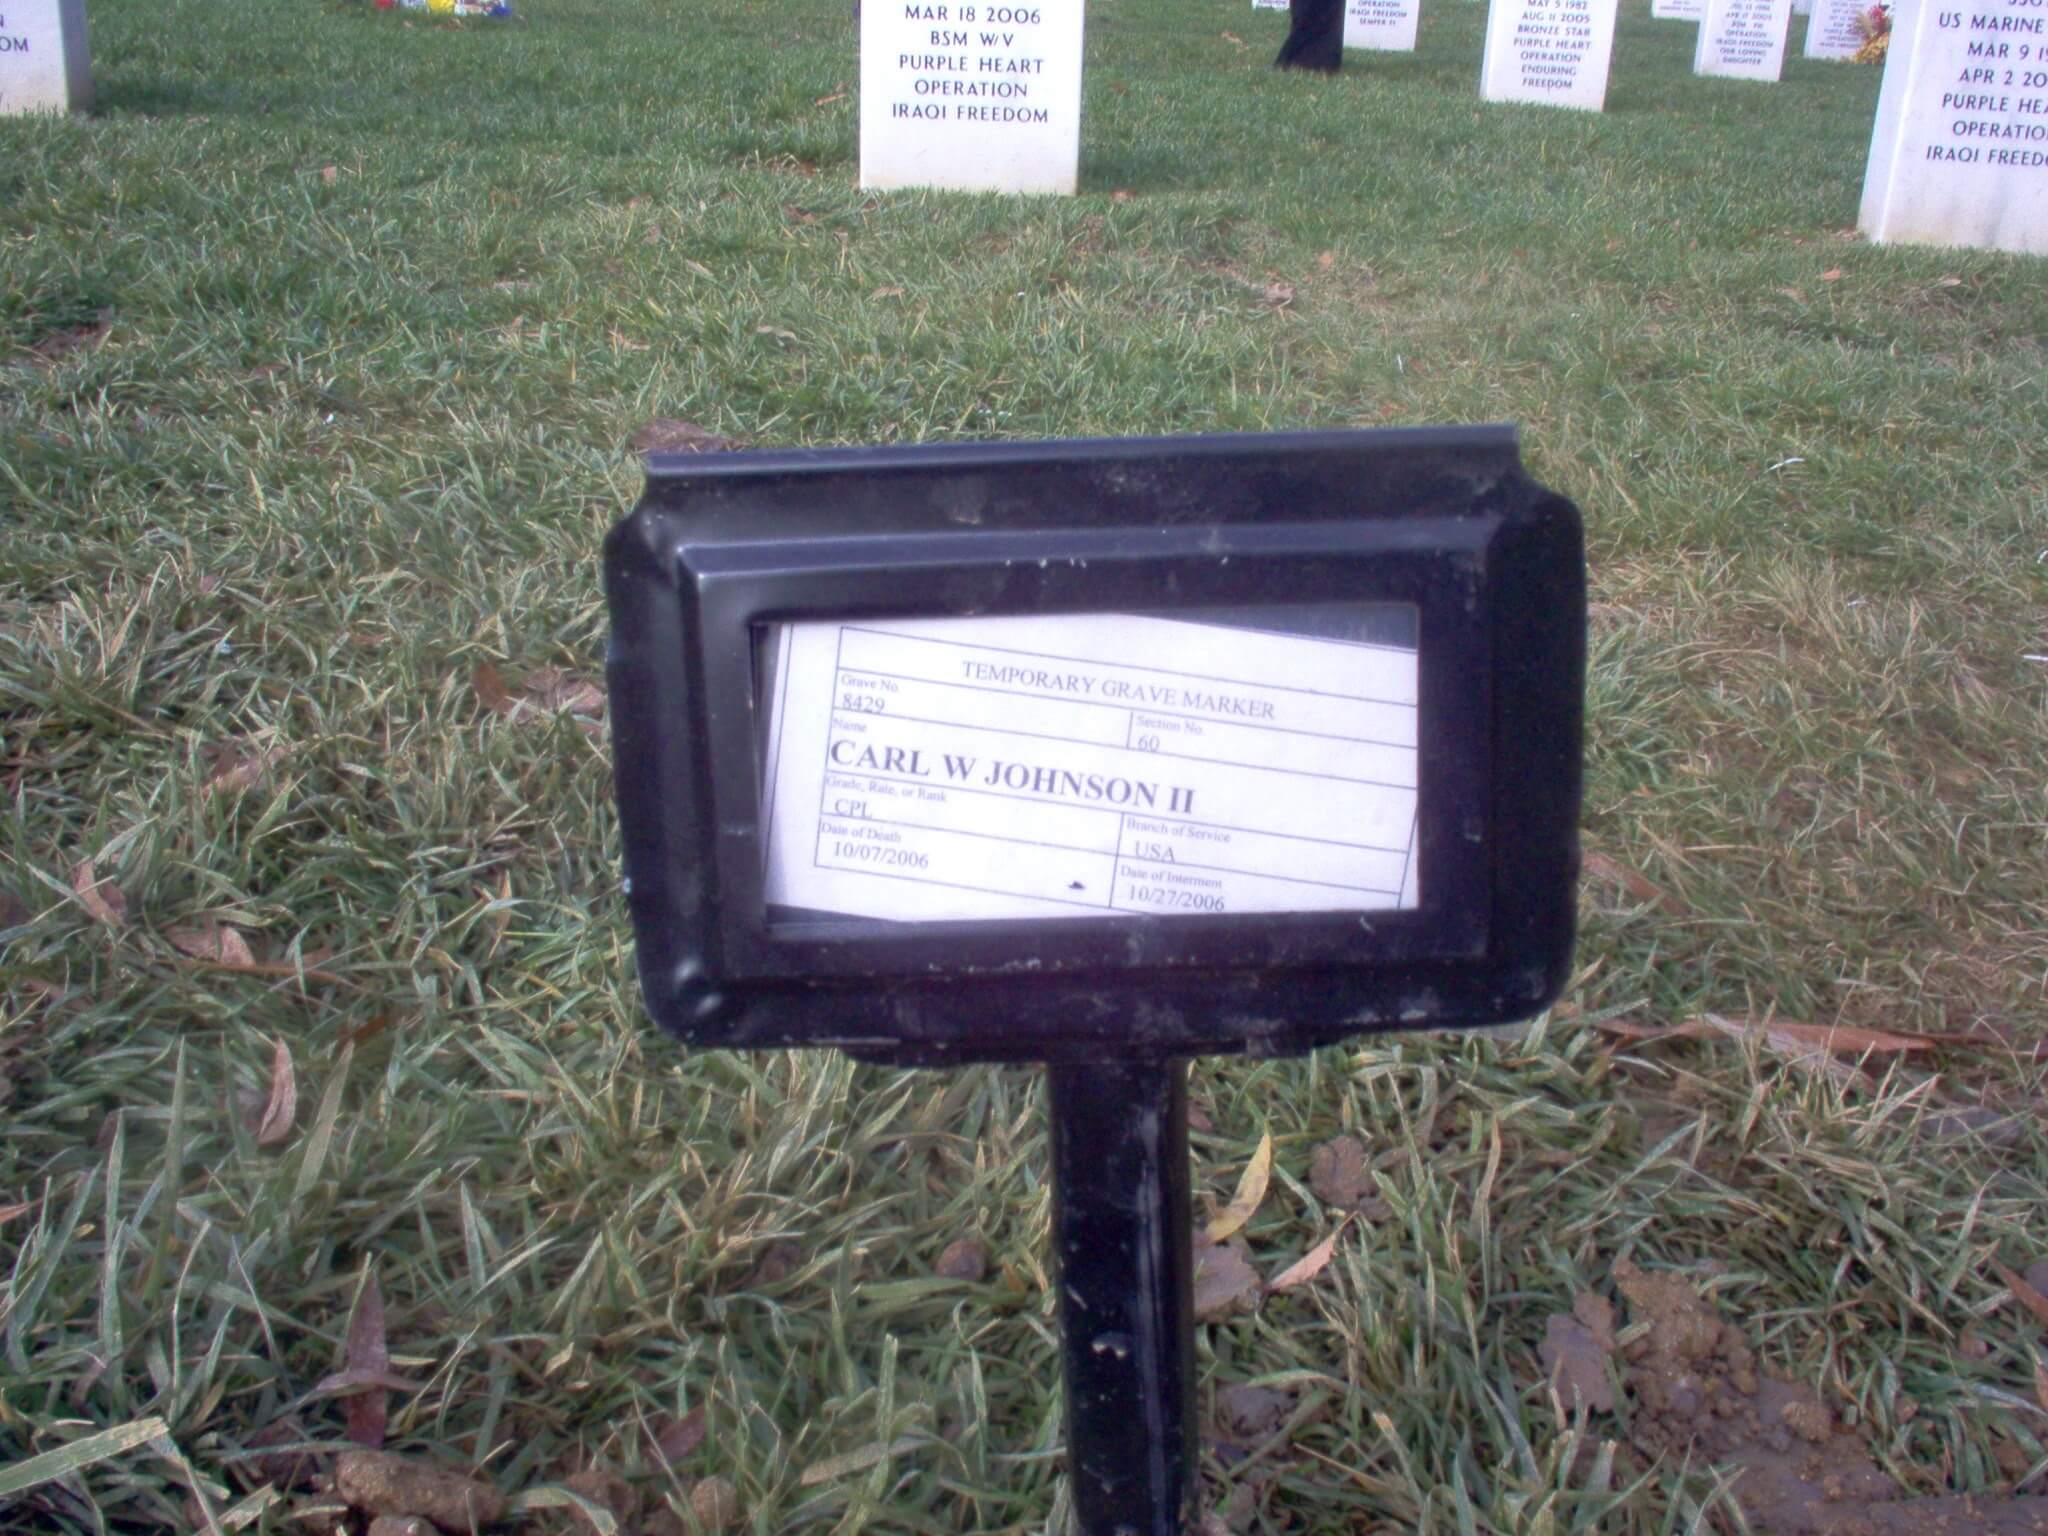 cwjohnson-gravesite-photo-november-2006-001